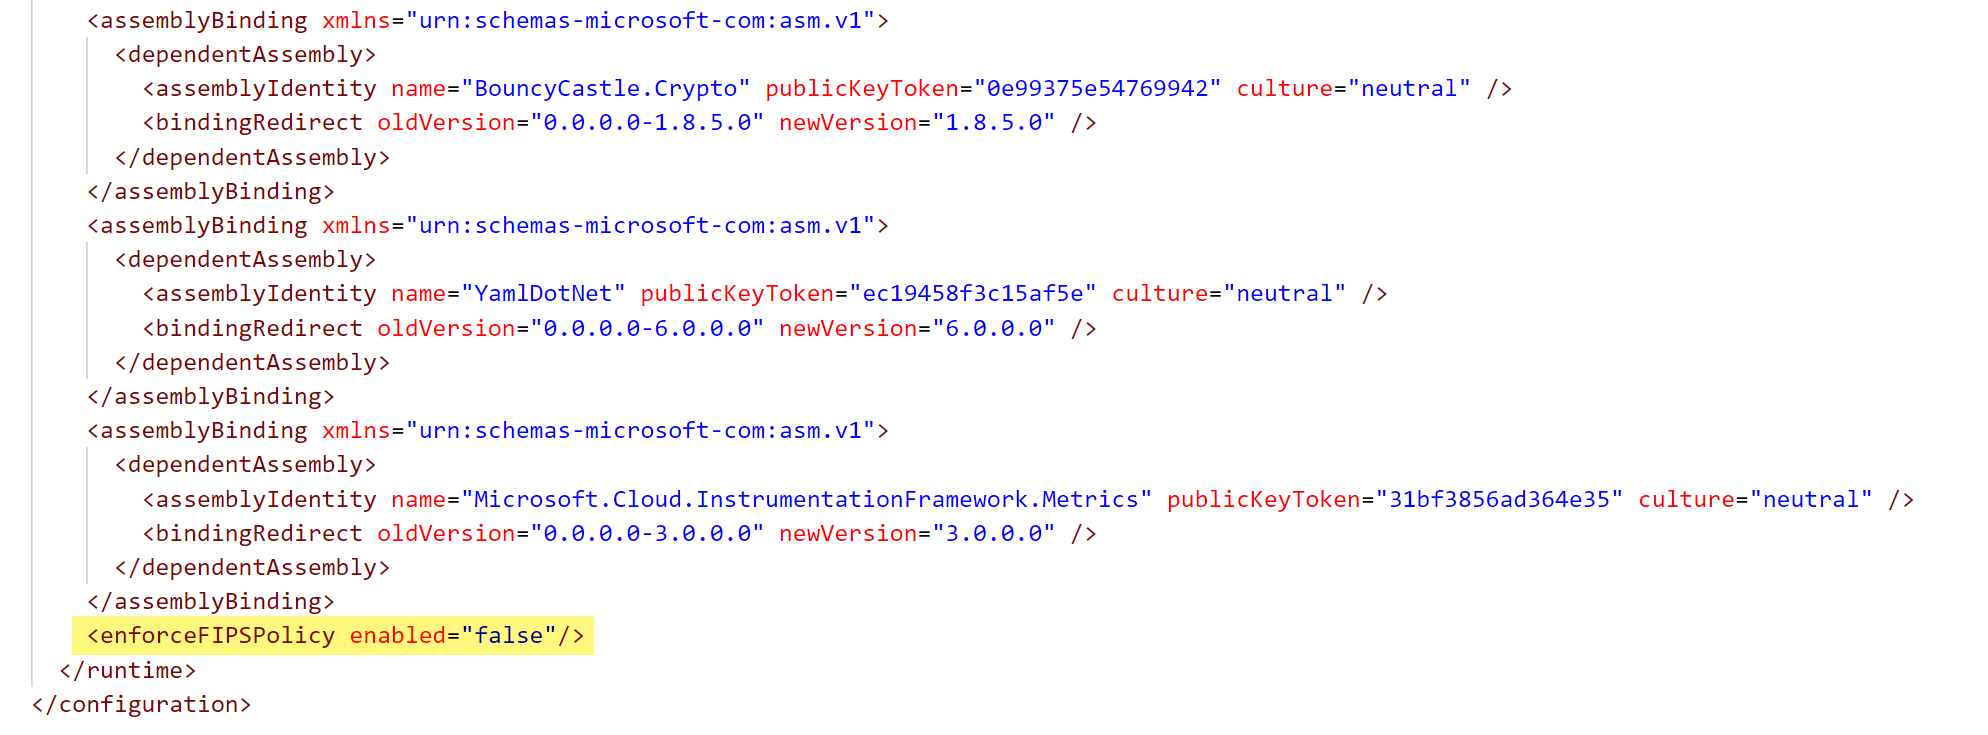 Capture d’écran d’une section du fichier diawp.exe.config montrant FIPS désactivé.